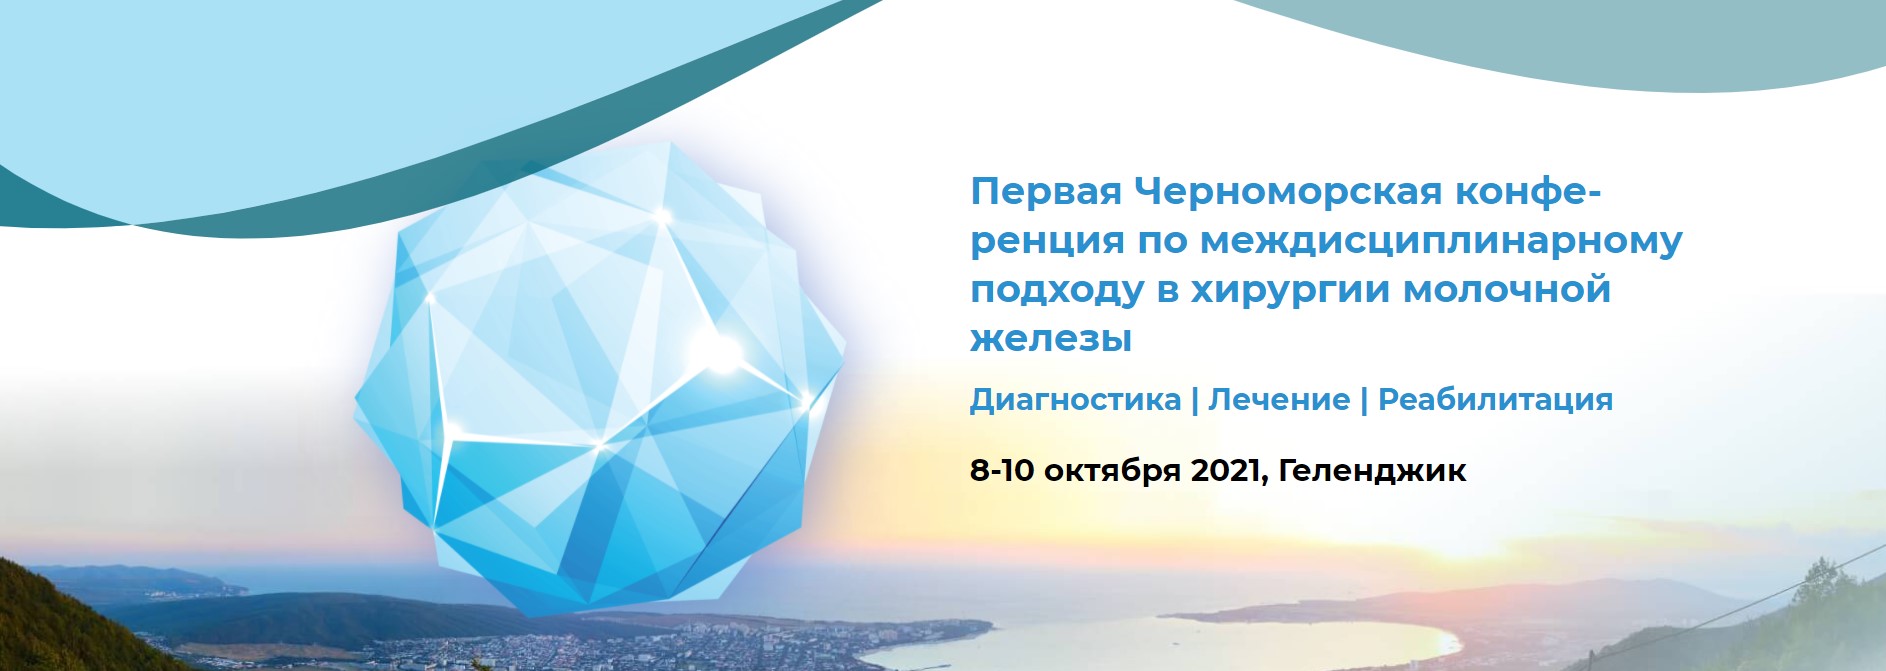 Началась Первая Черноморская конференция по междисциплинарному подходу в хирургии молочной железы